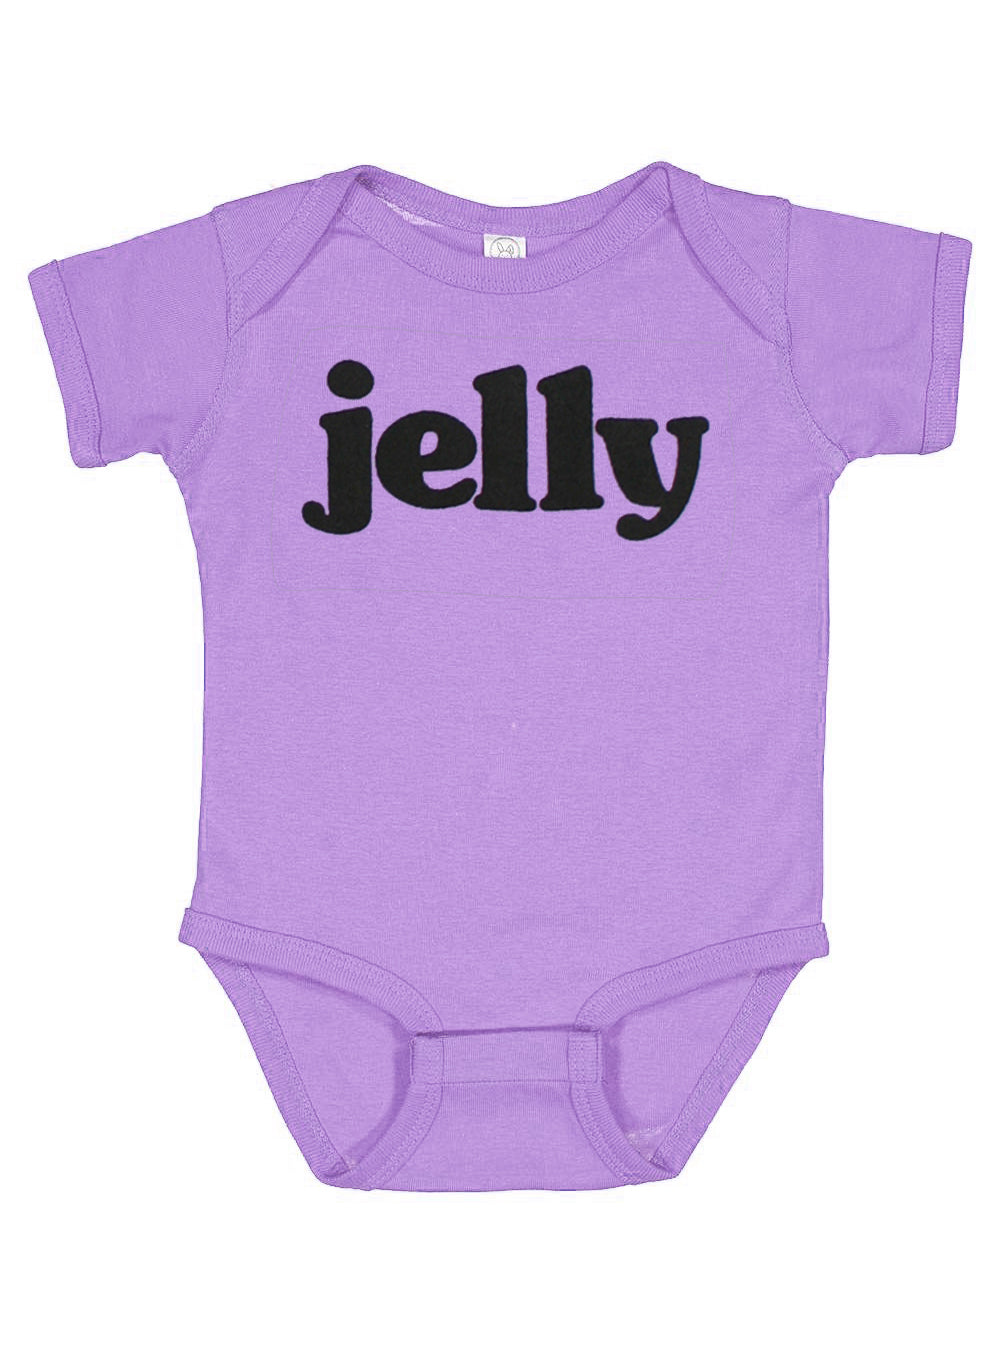 Jelly Baby Onesie